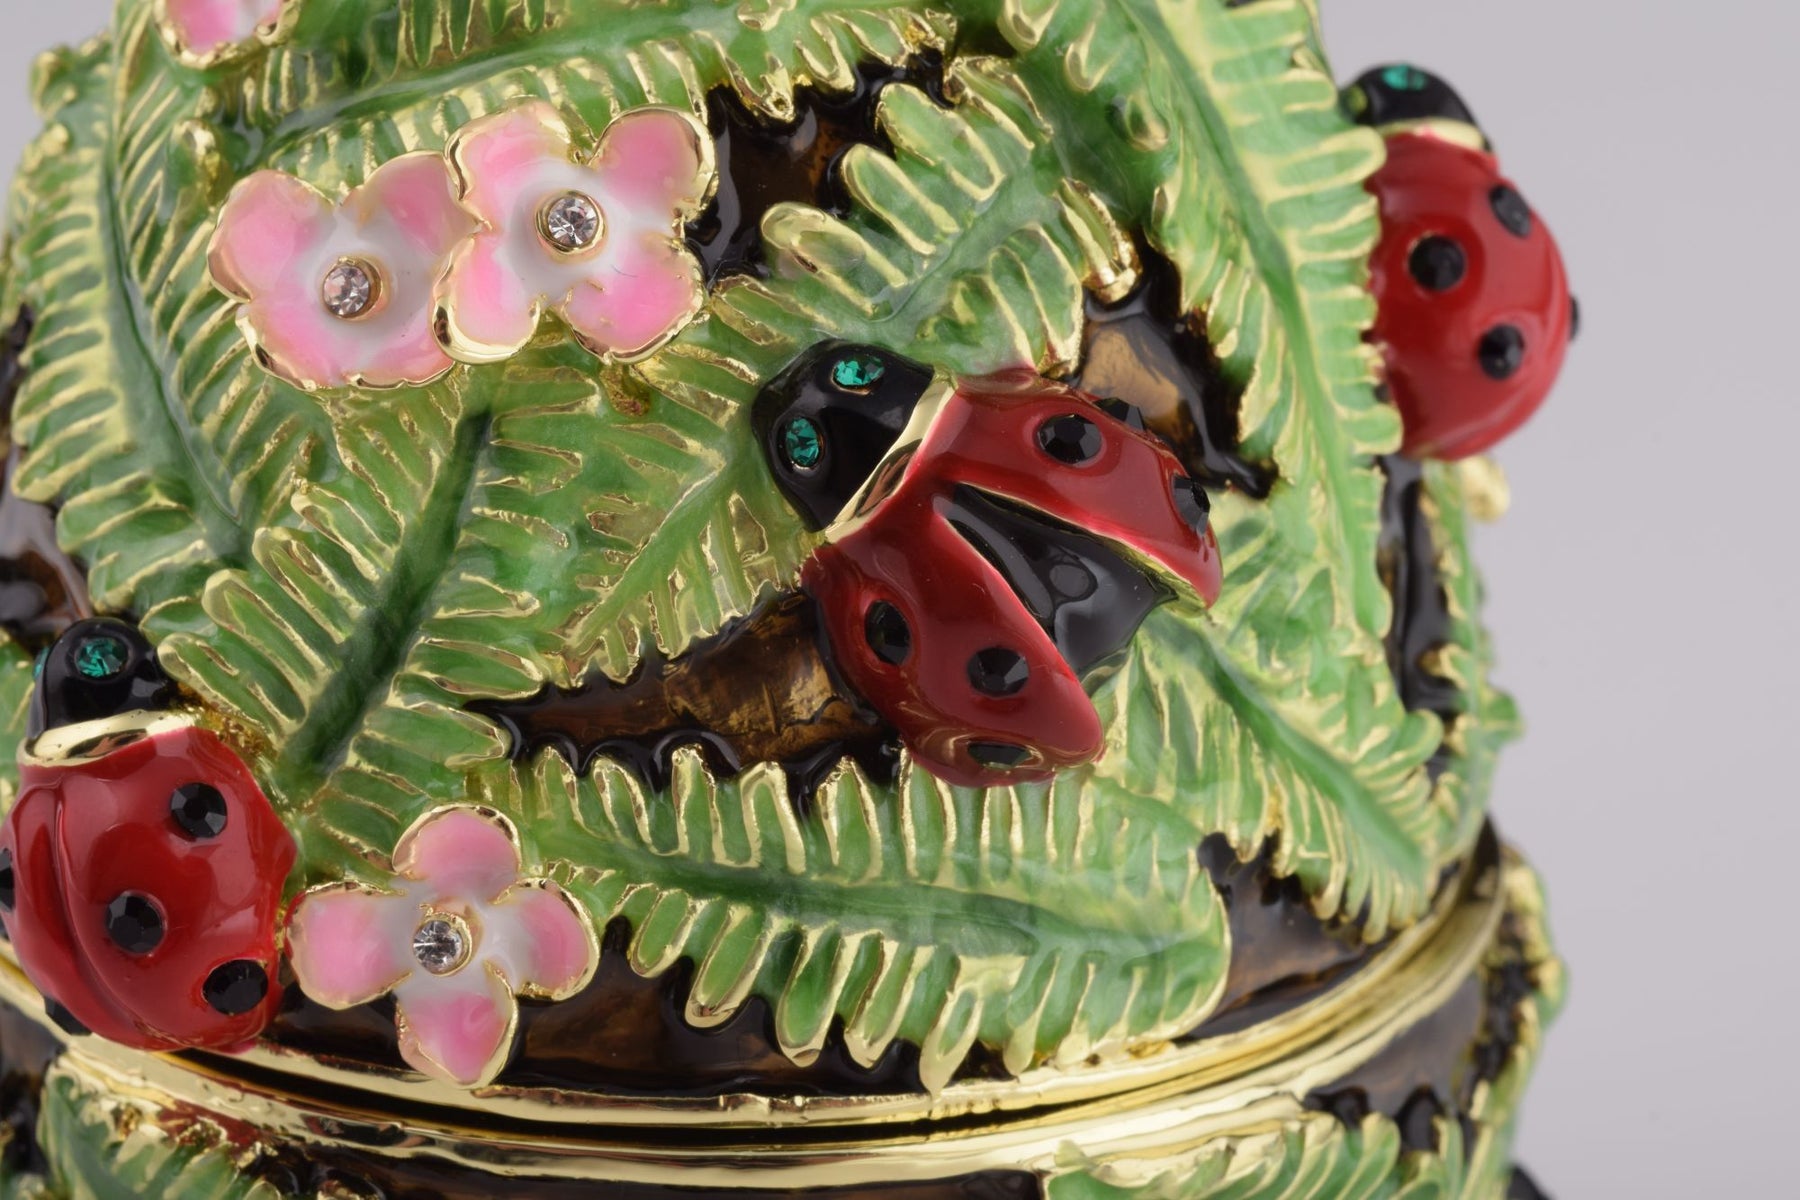 Green Music Playing Faberge Egg with Ladybird Beetles Ladybugs Music Box Keren Kopal